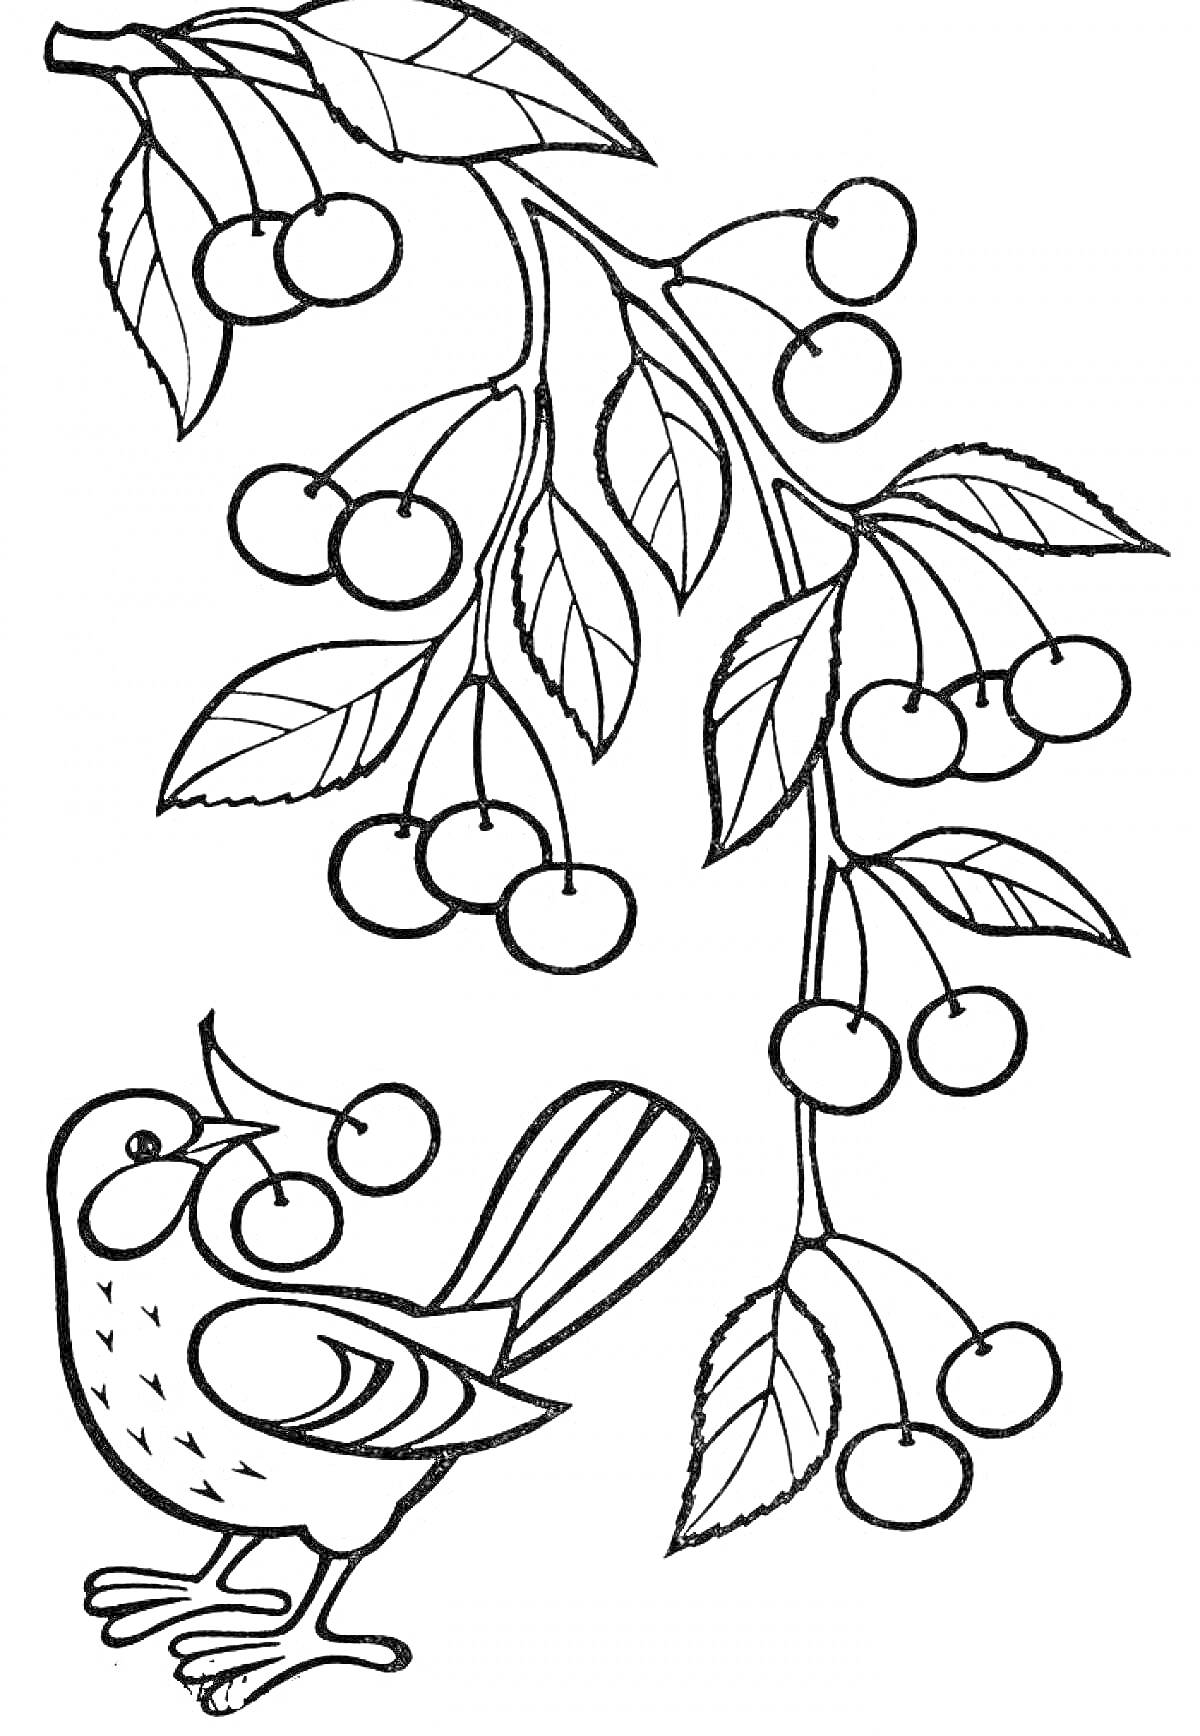 Раскраска Ветка с листьями и ягодами, птица, держащая ягоду